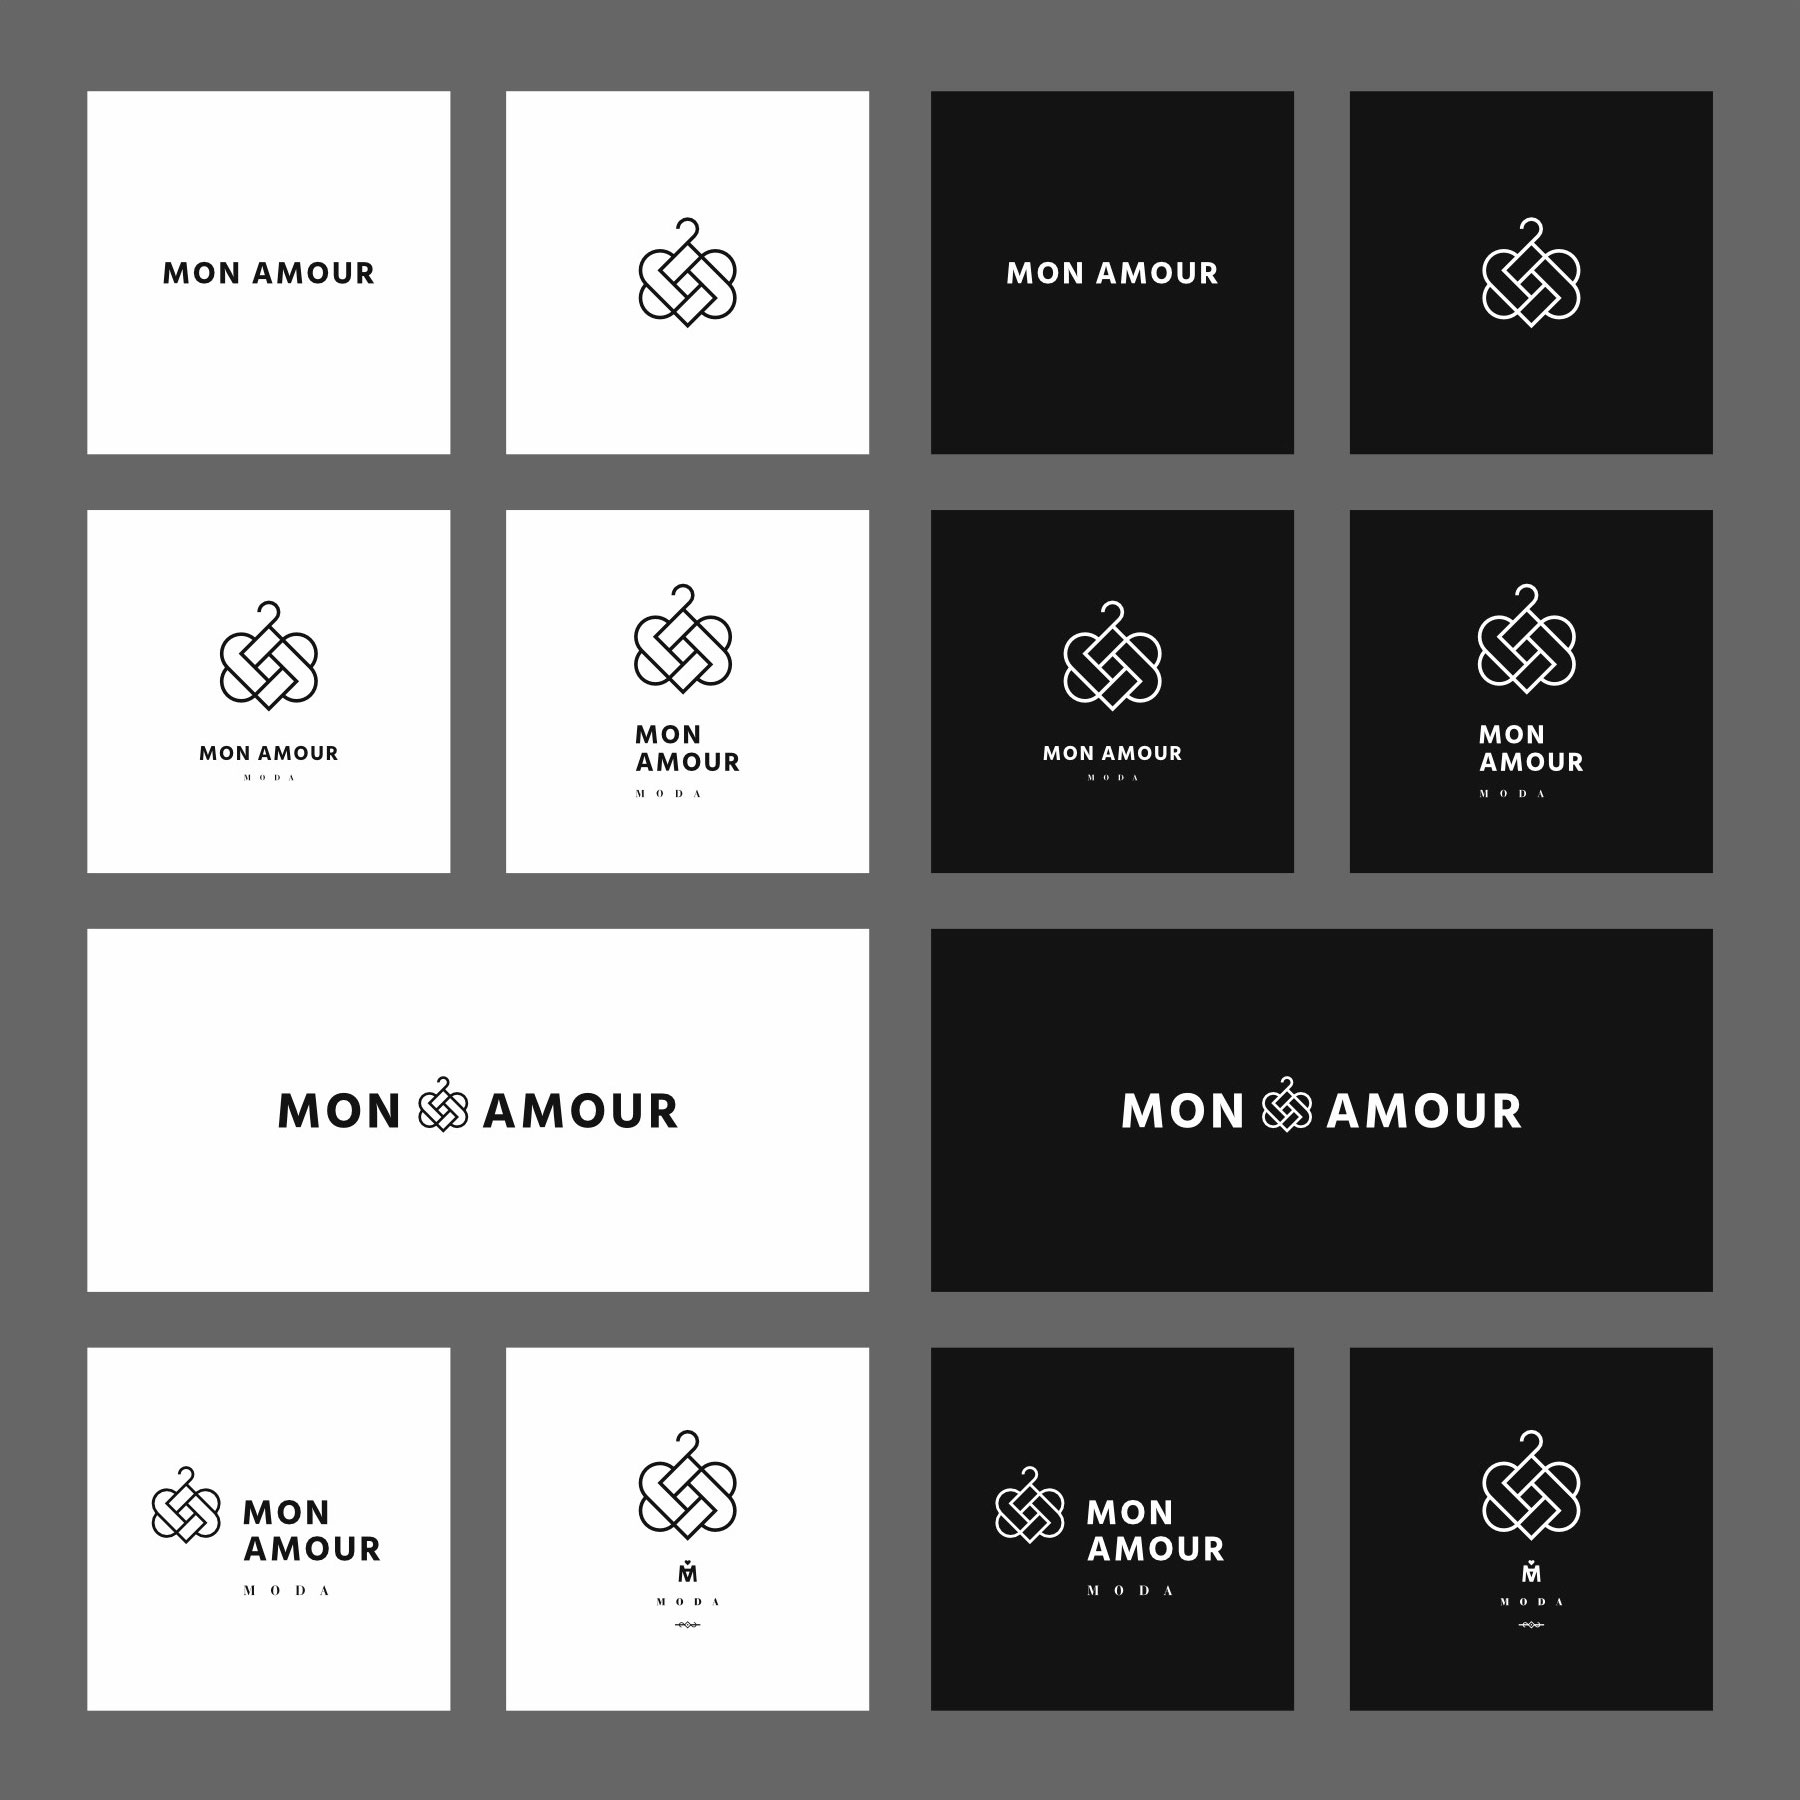 Mon Amour moda logo variaciones - javier real